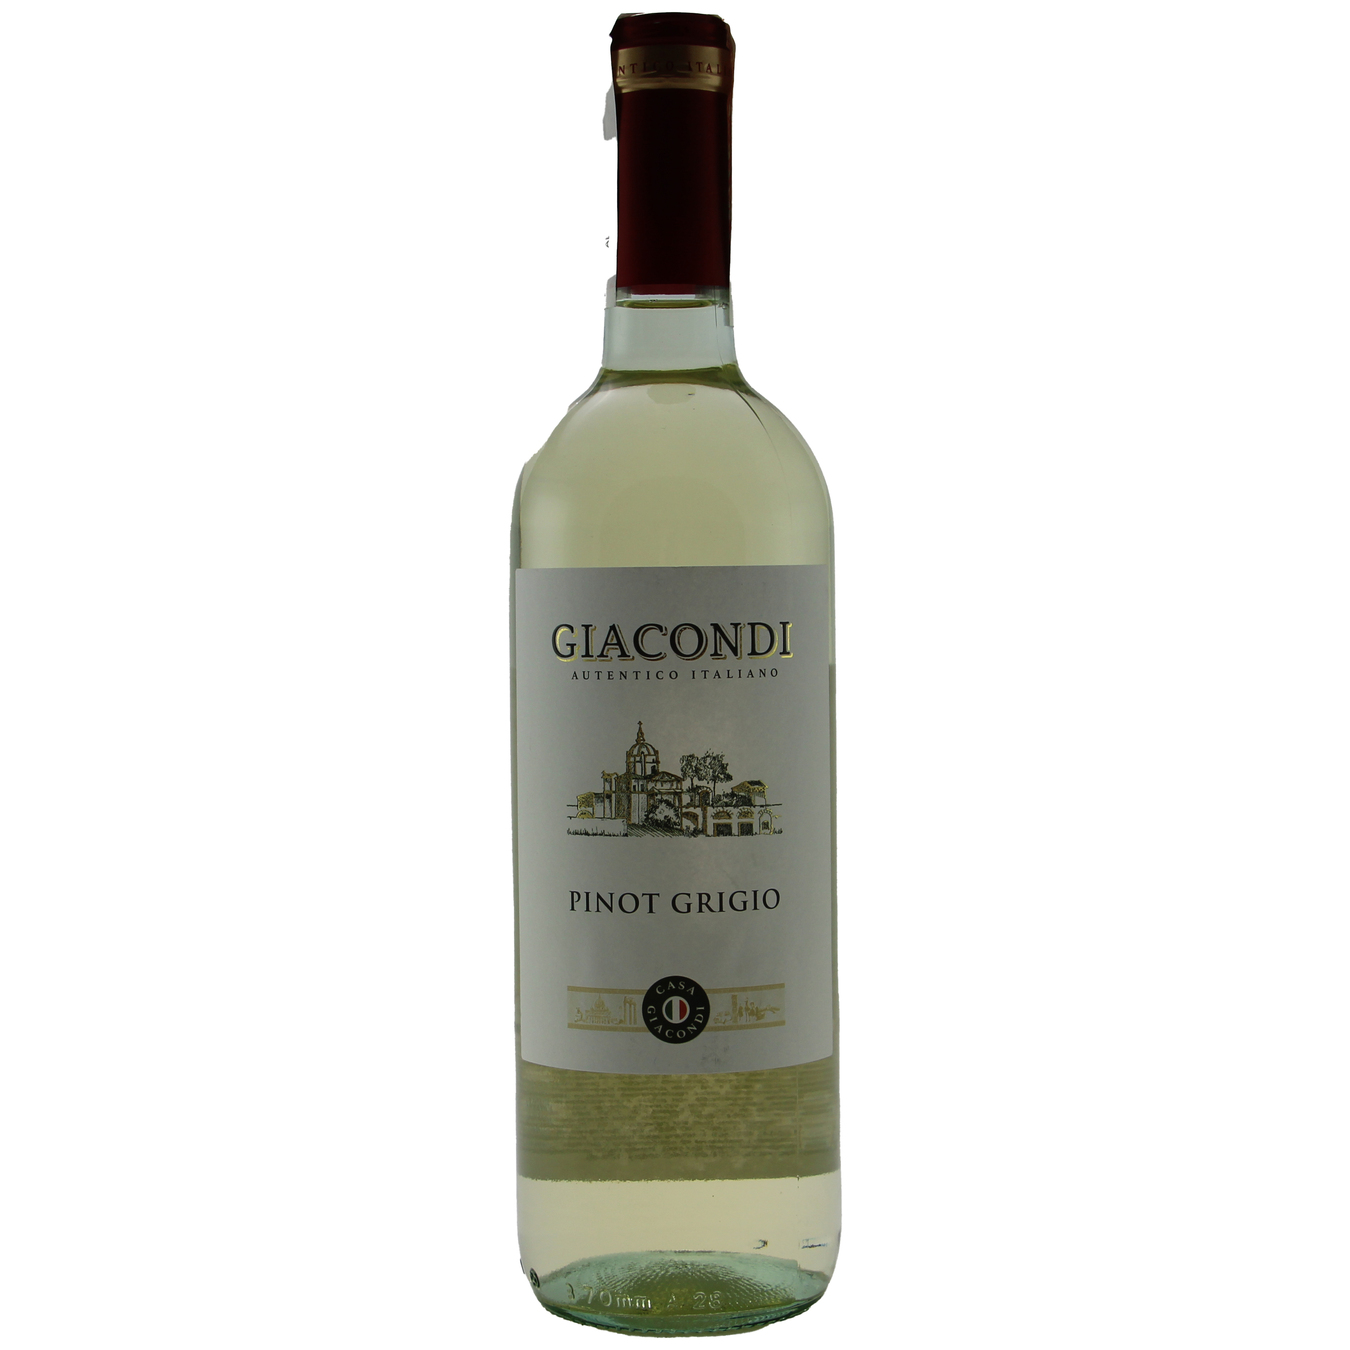 Вино Giacondi Pinot Grigio Delle Venezie біле сухе IGT 12% 0,75л